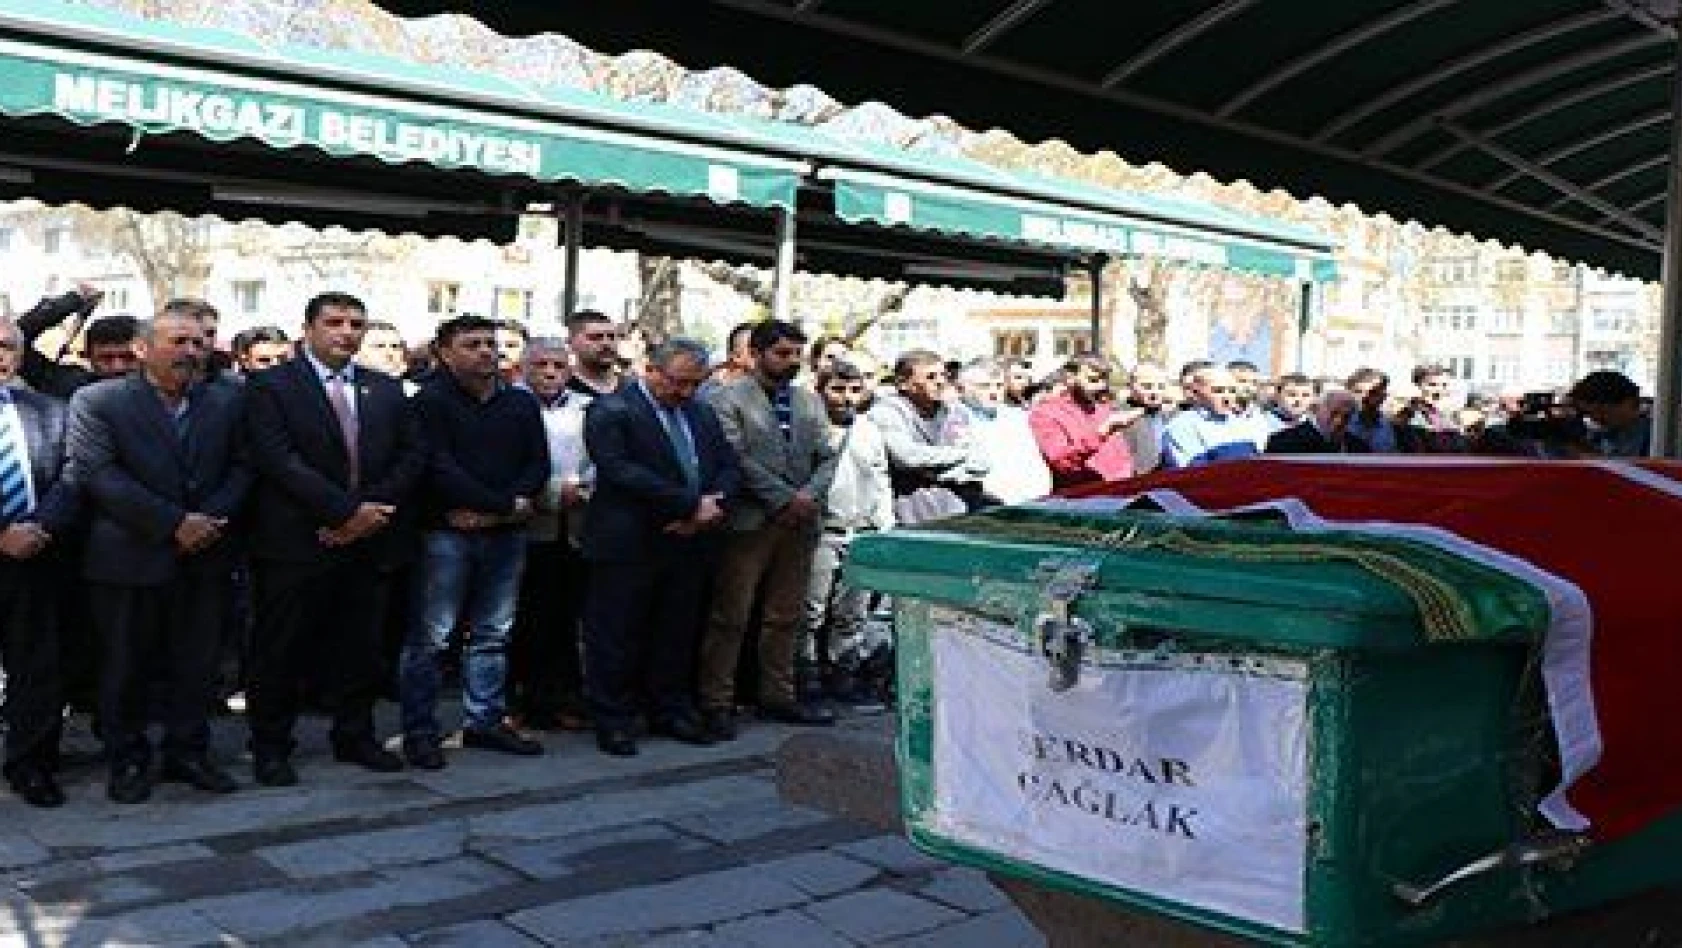 Eskişehir'de öldürülen akademisyene gözü yaşlı veda 